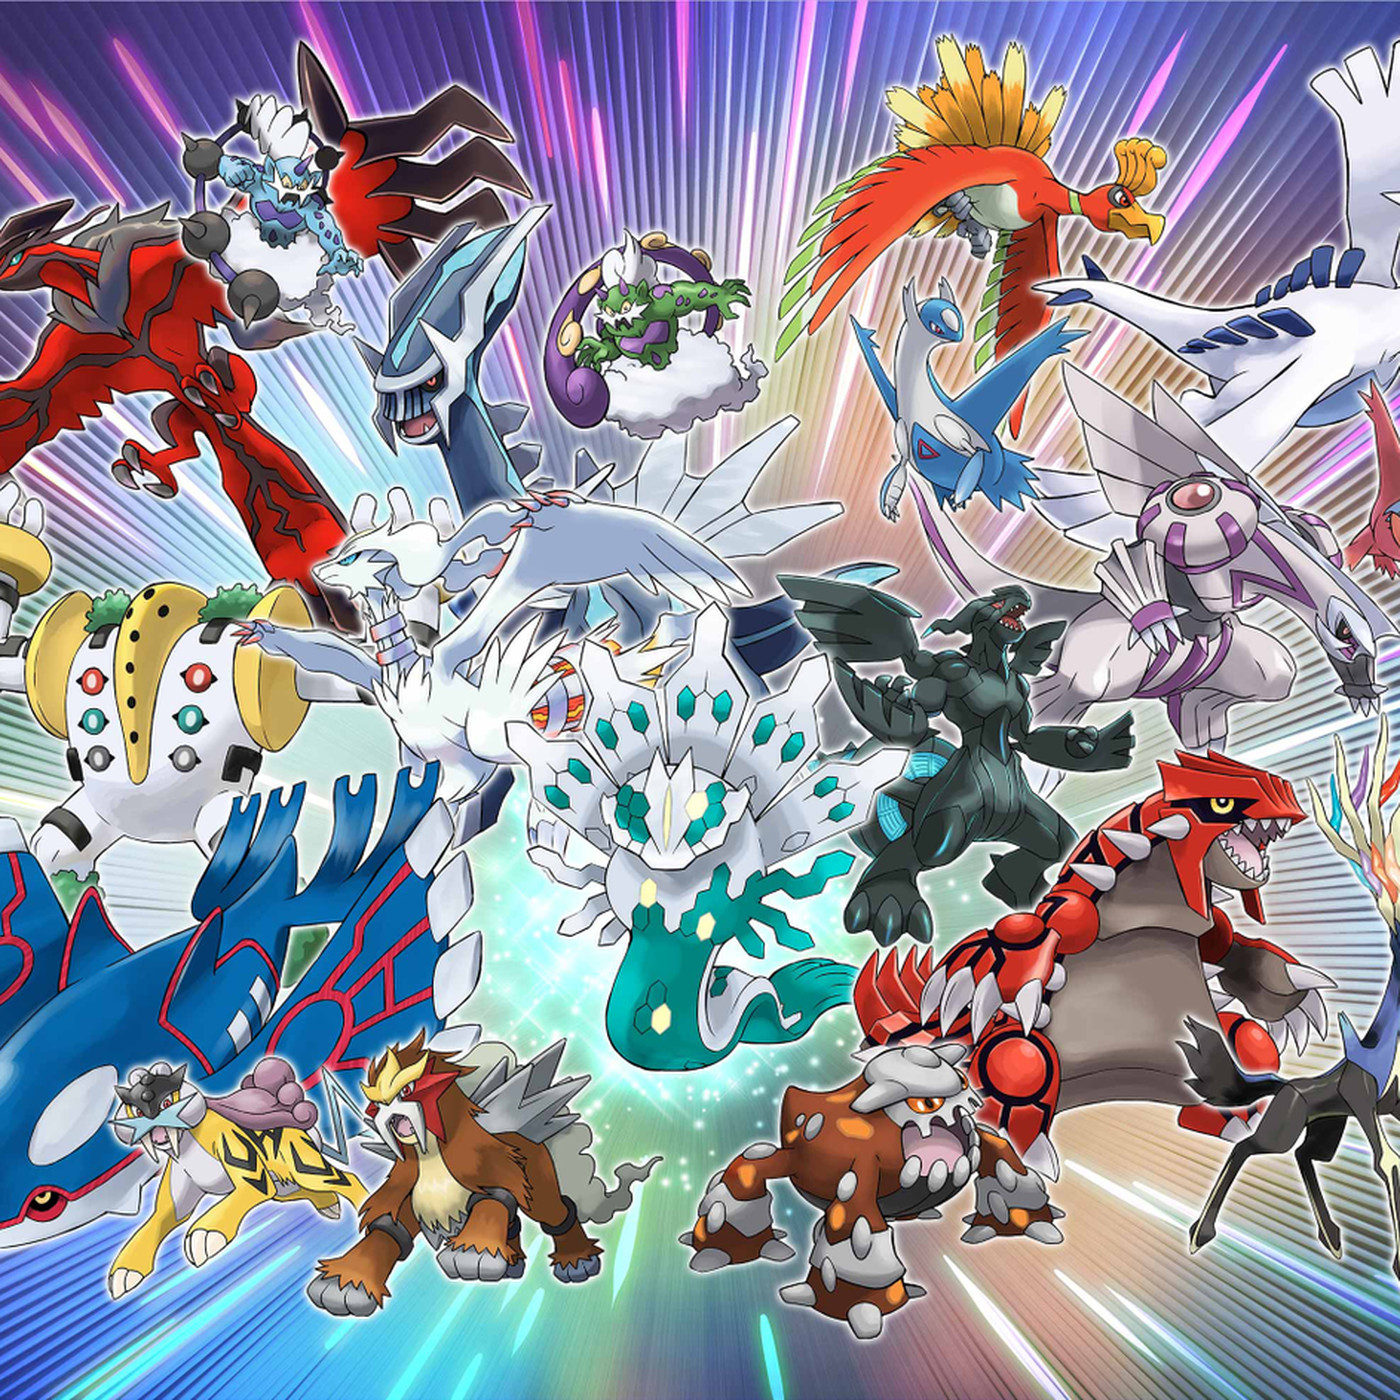 fond d'écran pokemon mega evolution,dessin animé,anime,conception graphique,personnage fictif,fiction